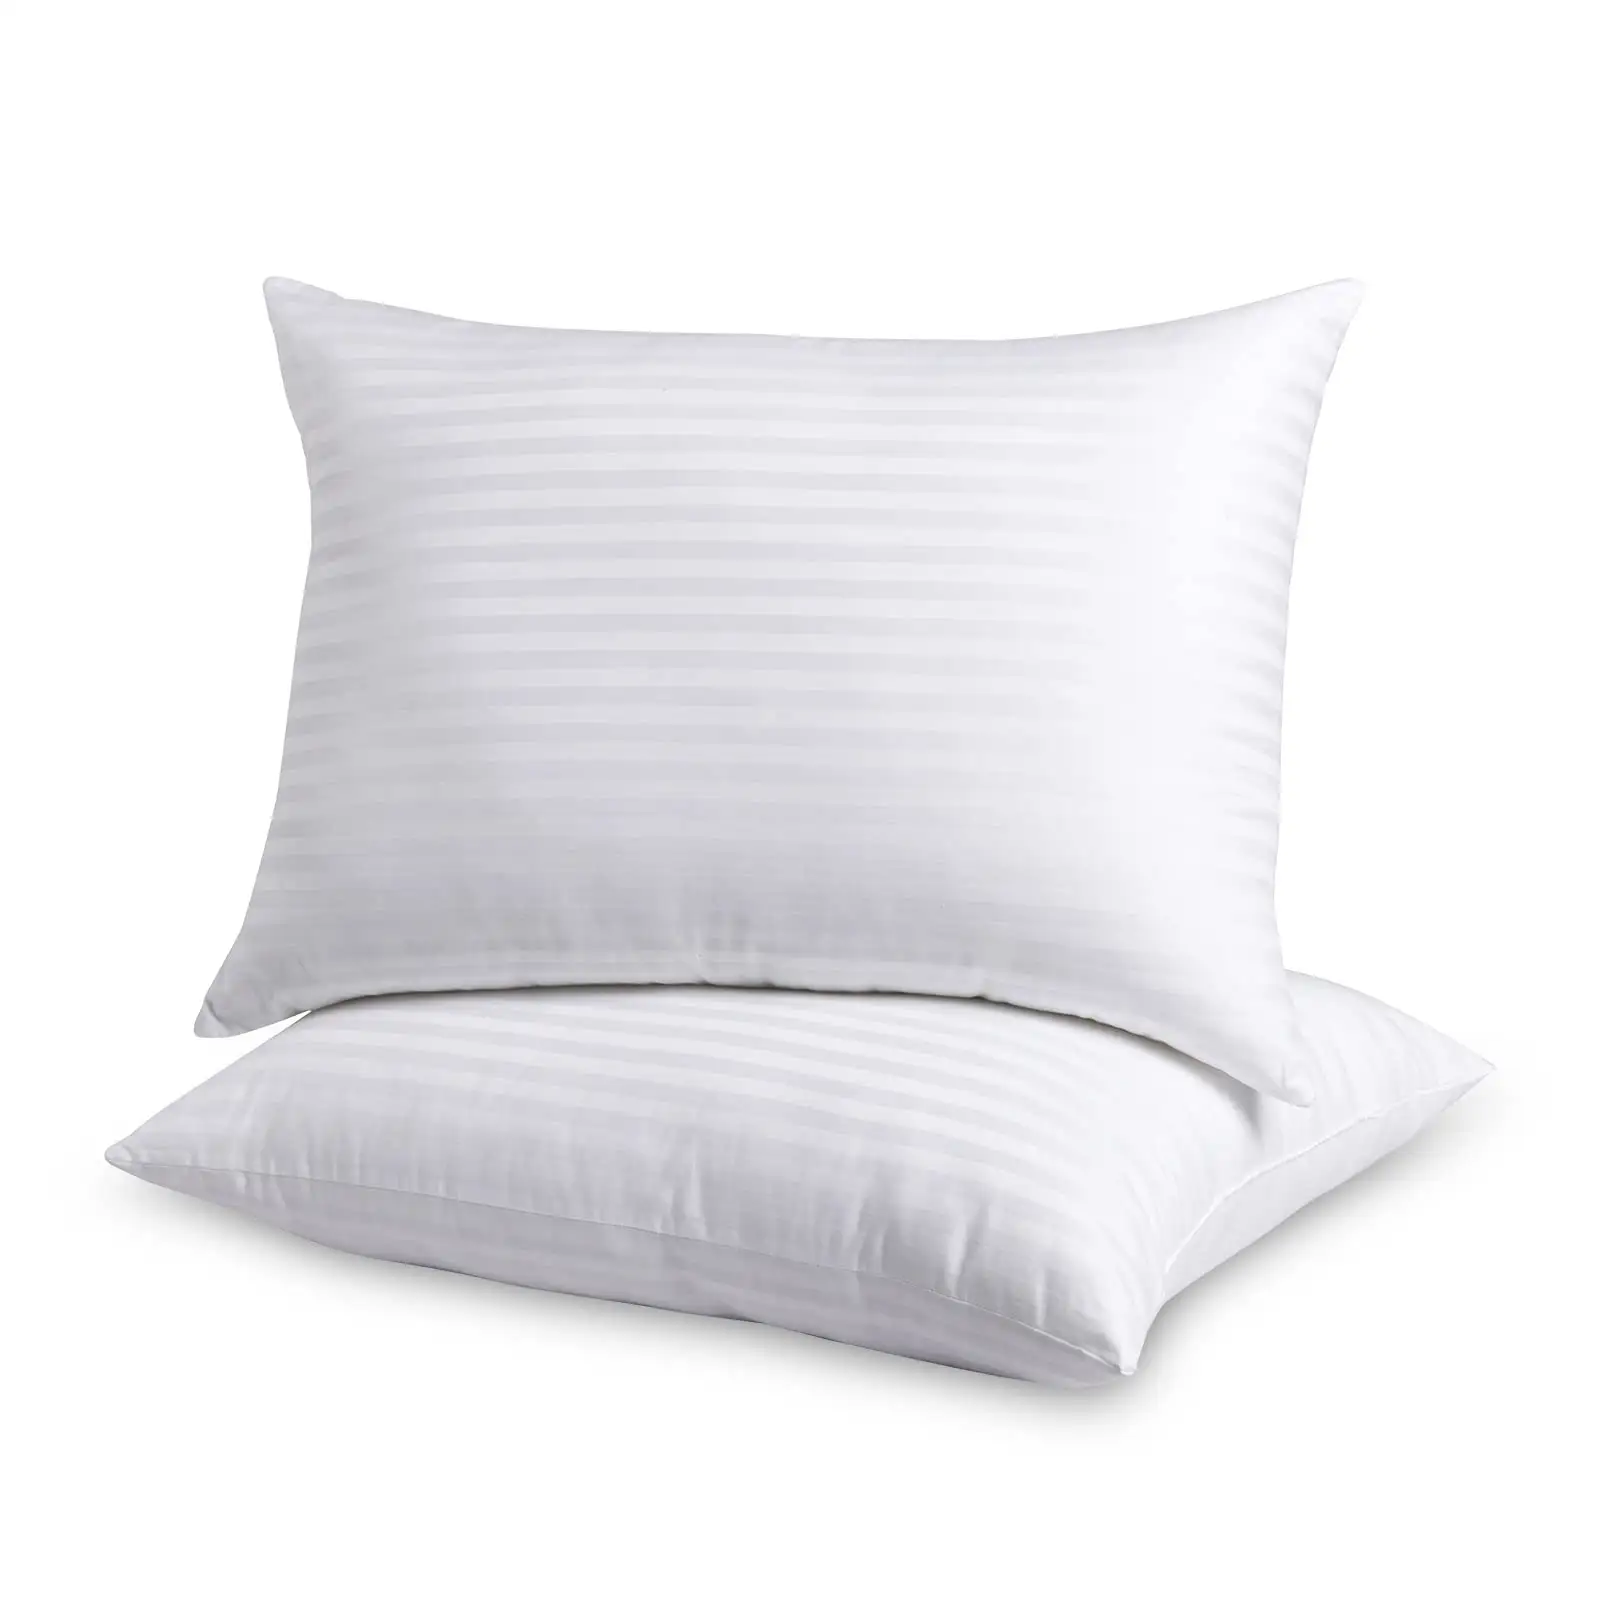 OEKO-TEX STANDARD100ホワイト2パックキングサイズ1cmストライプマイクロファイバーホテルベッド枕ダウン代替ベッド枕睡眠用